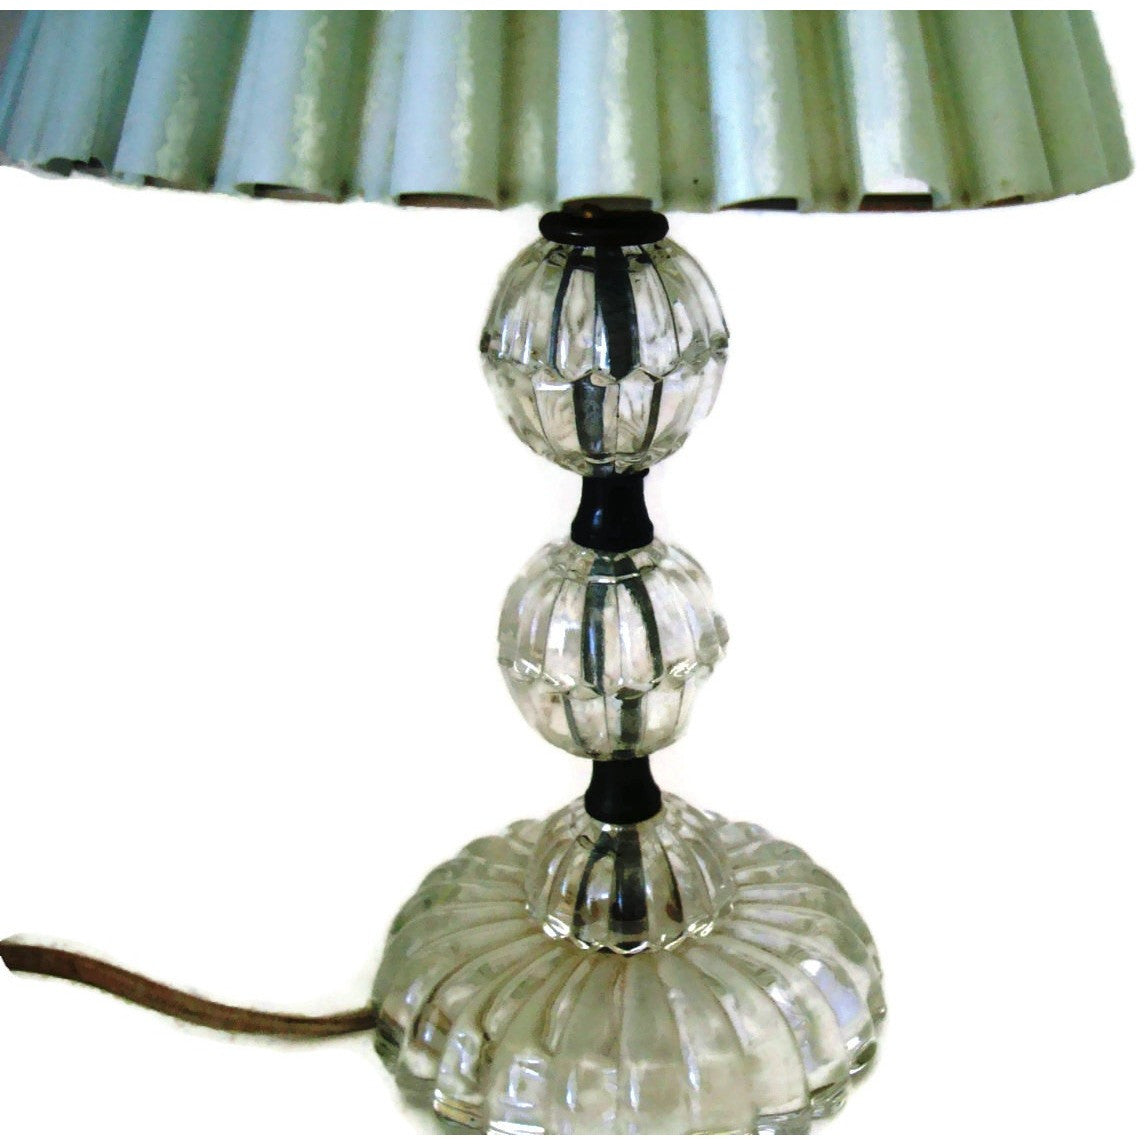 Vintage Glass Dresser Lamps Pair Cottage Style Decor C 1940s